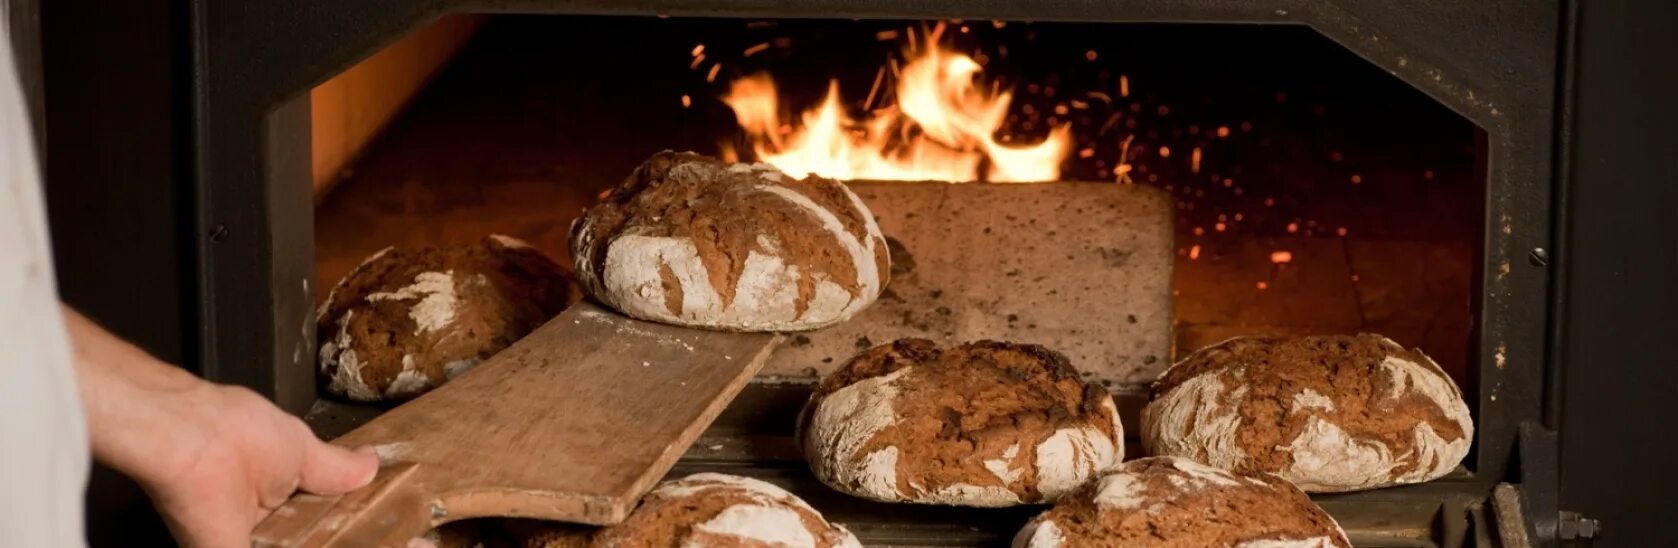 Видео печь хлеб. Печка для хлеба. Хлеб в печи. Печь хлеб в печке. Русская печь для выпекания хлеба..